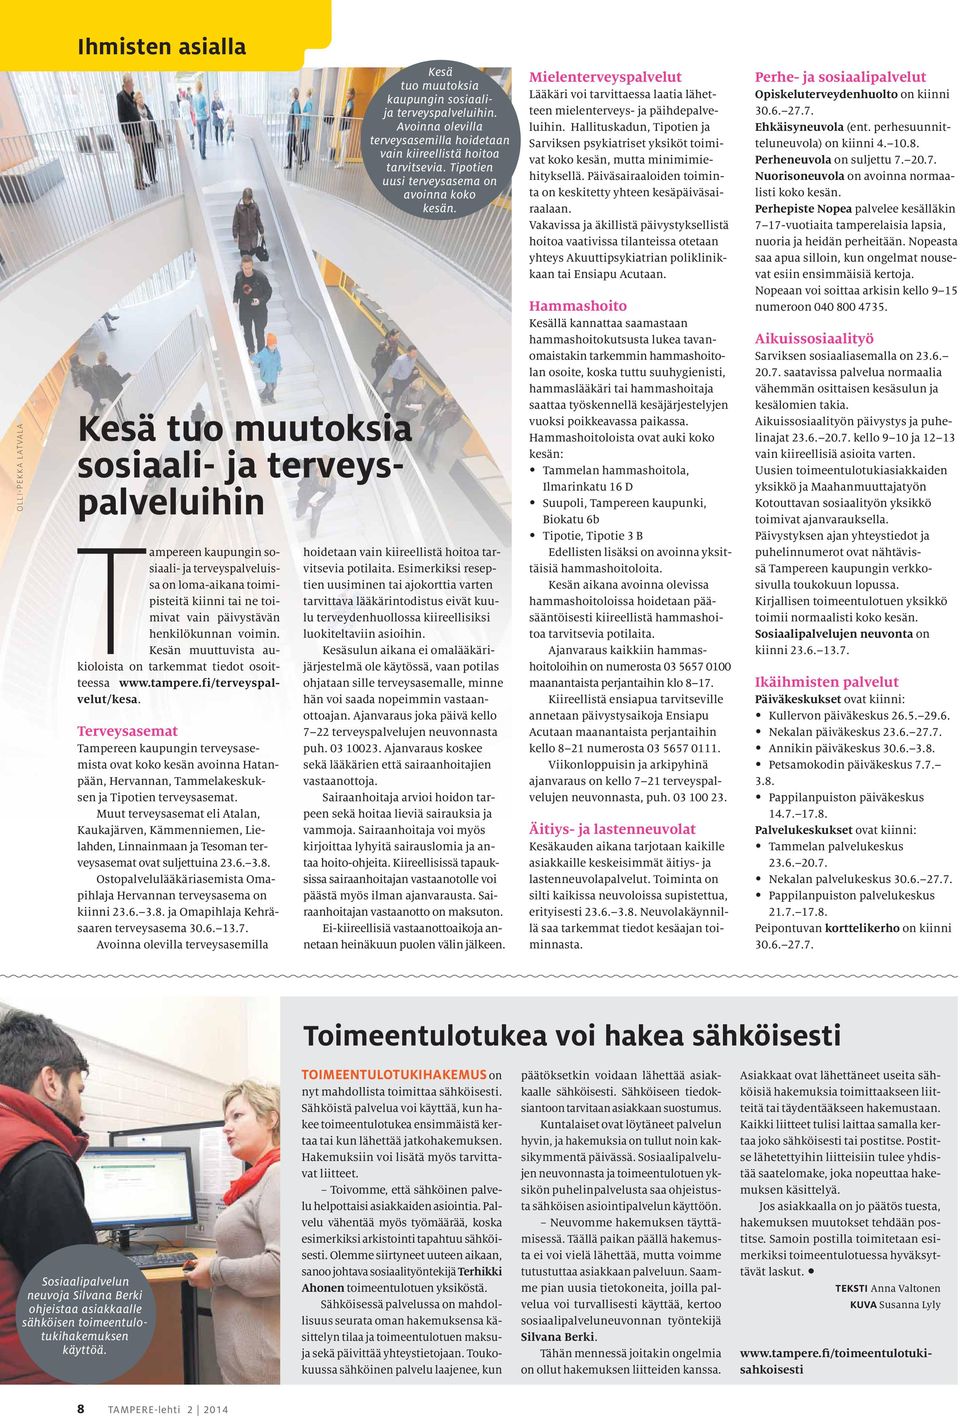 Terveysasemat Tampereen kaupungin terveysasemista ovat koko kesän avoinna Hatanpään, Hervannan, Tammelakeskuksen ja Tipotien terveysasemat.